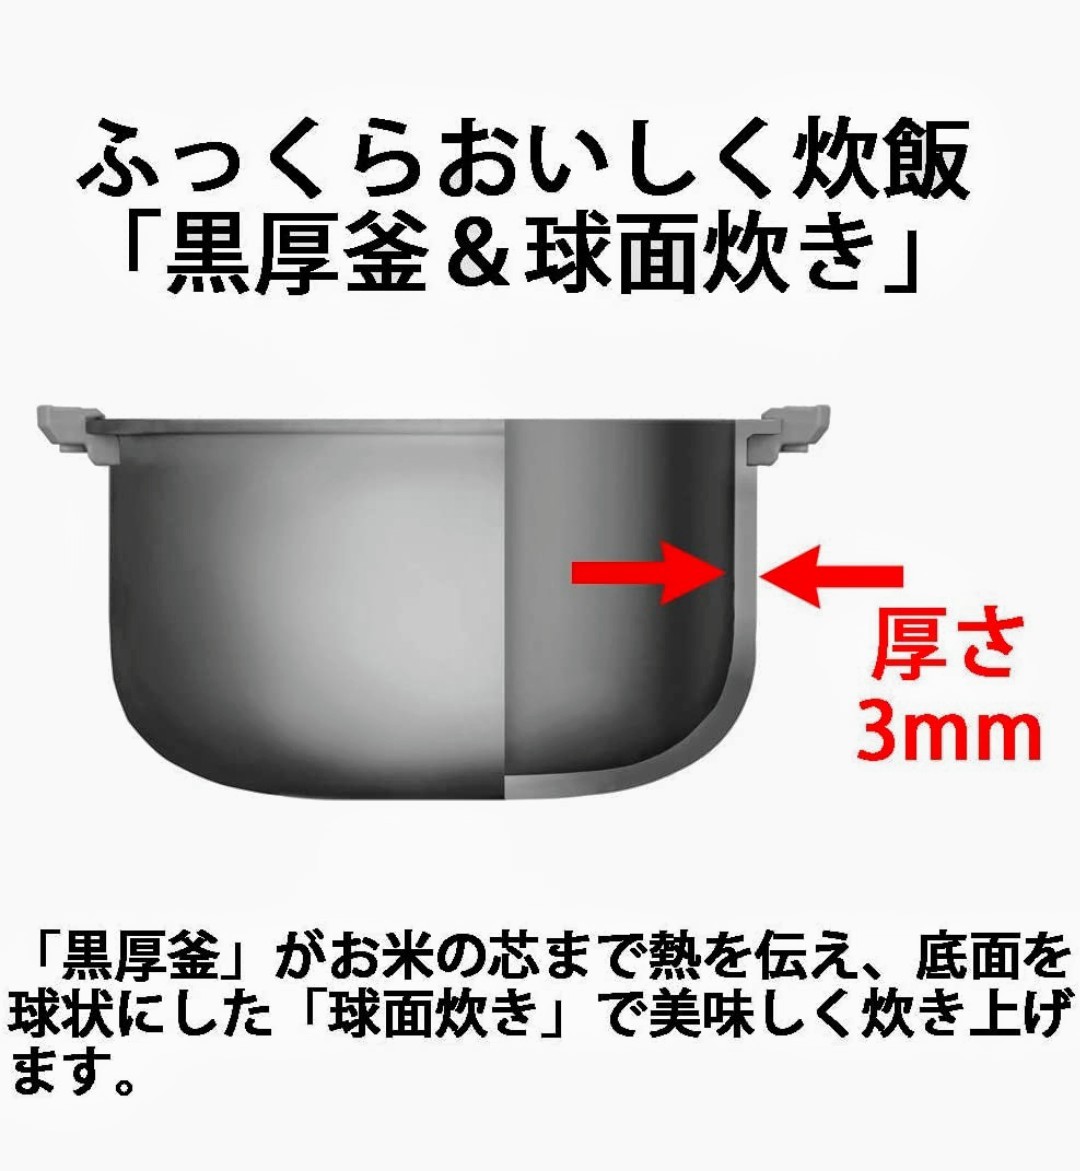 シャープ パン調理機能付 ジャー炊飯器 3合炊き ホワイト KS-CF05A-W SHARP 炊飯器